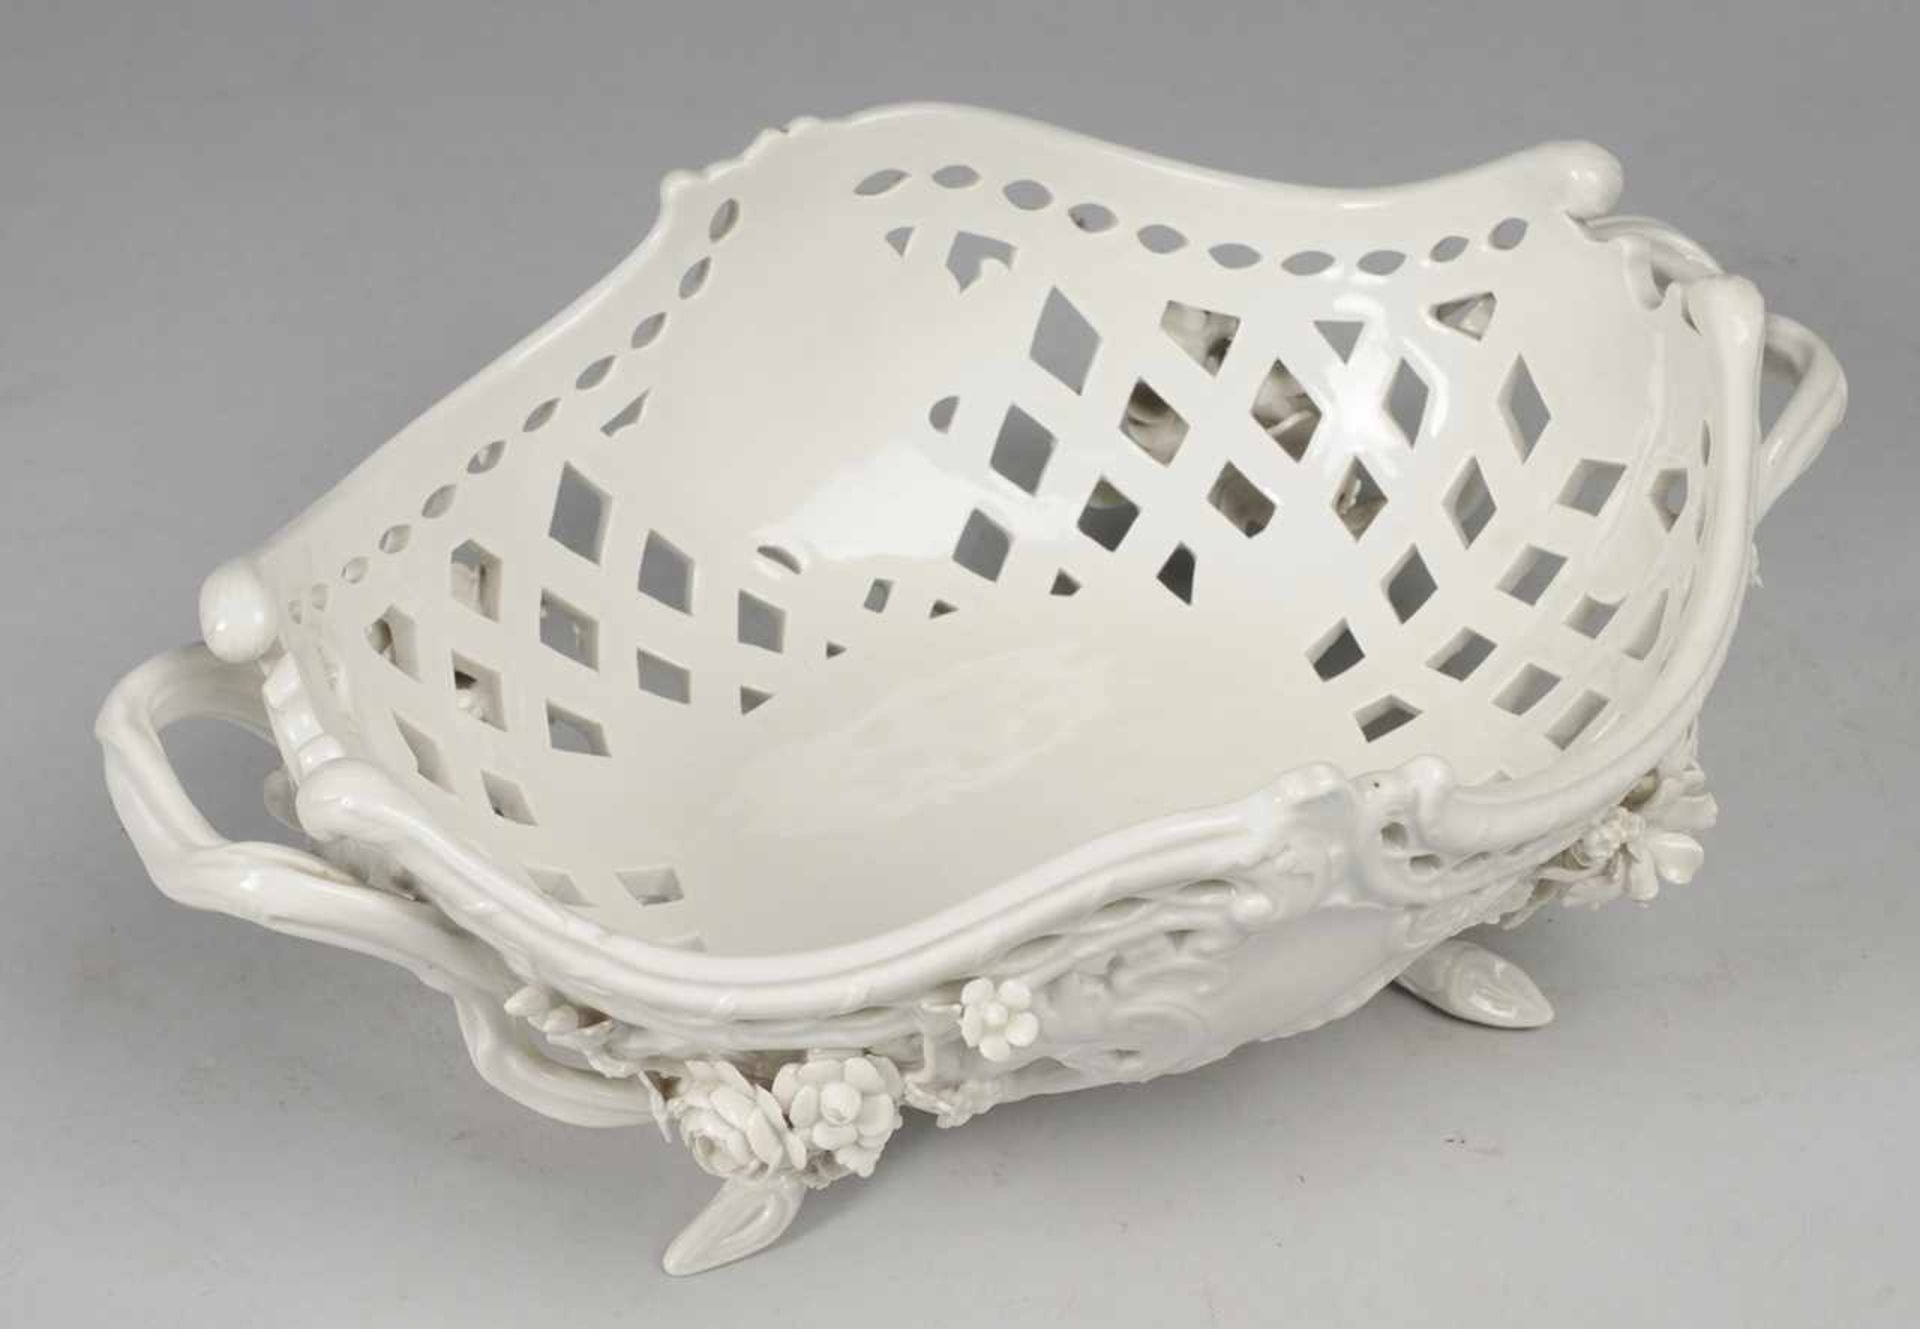 Durchbruchkorb mit Blütenbesatz Weiß, glasiert. Ovale, vierpassig geschweifte Form. Seitl. Handhaben - Image 2 of 2